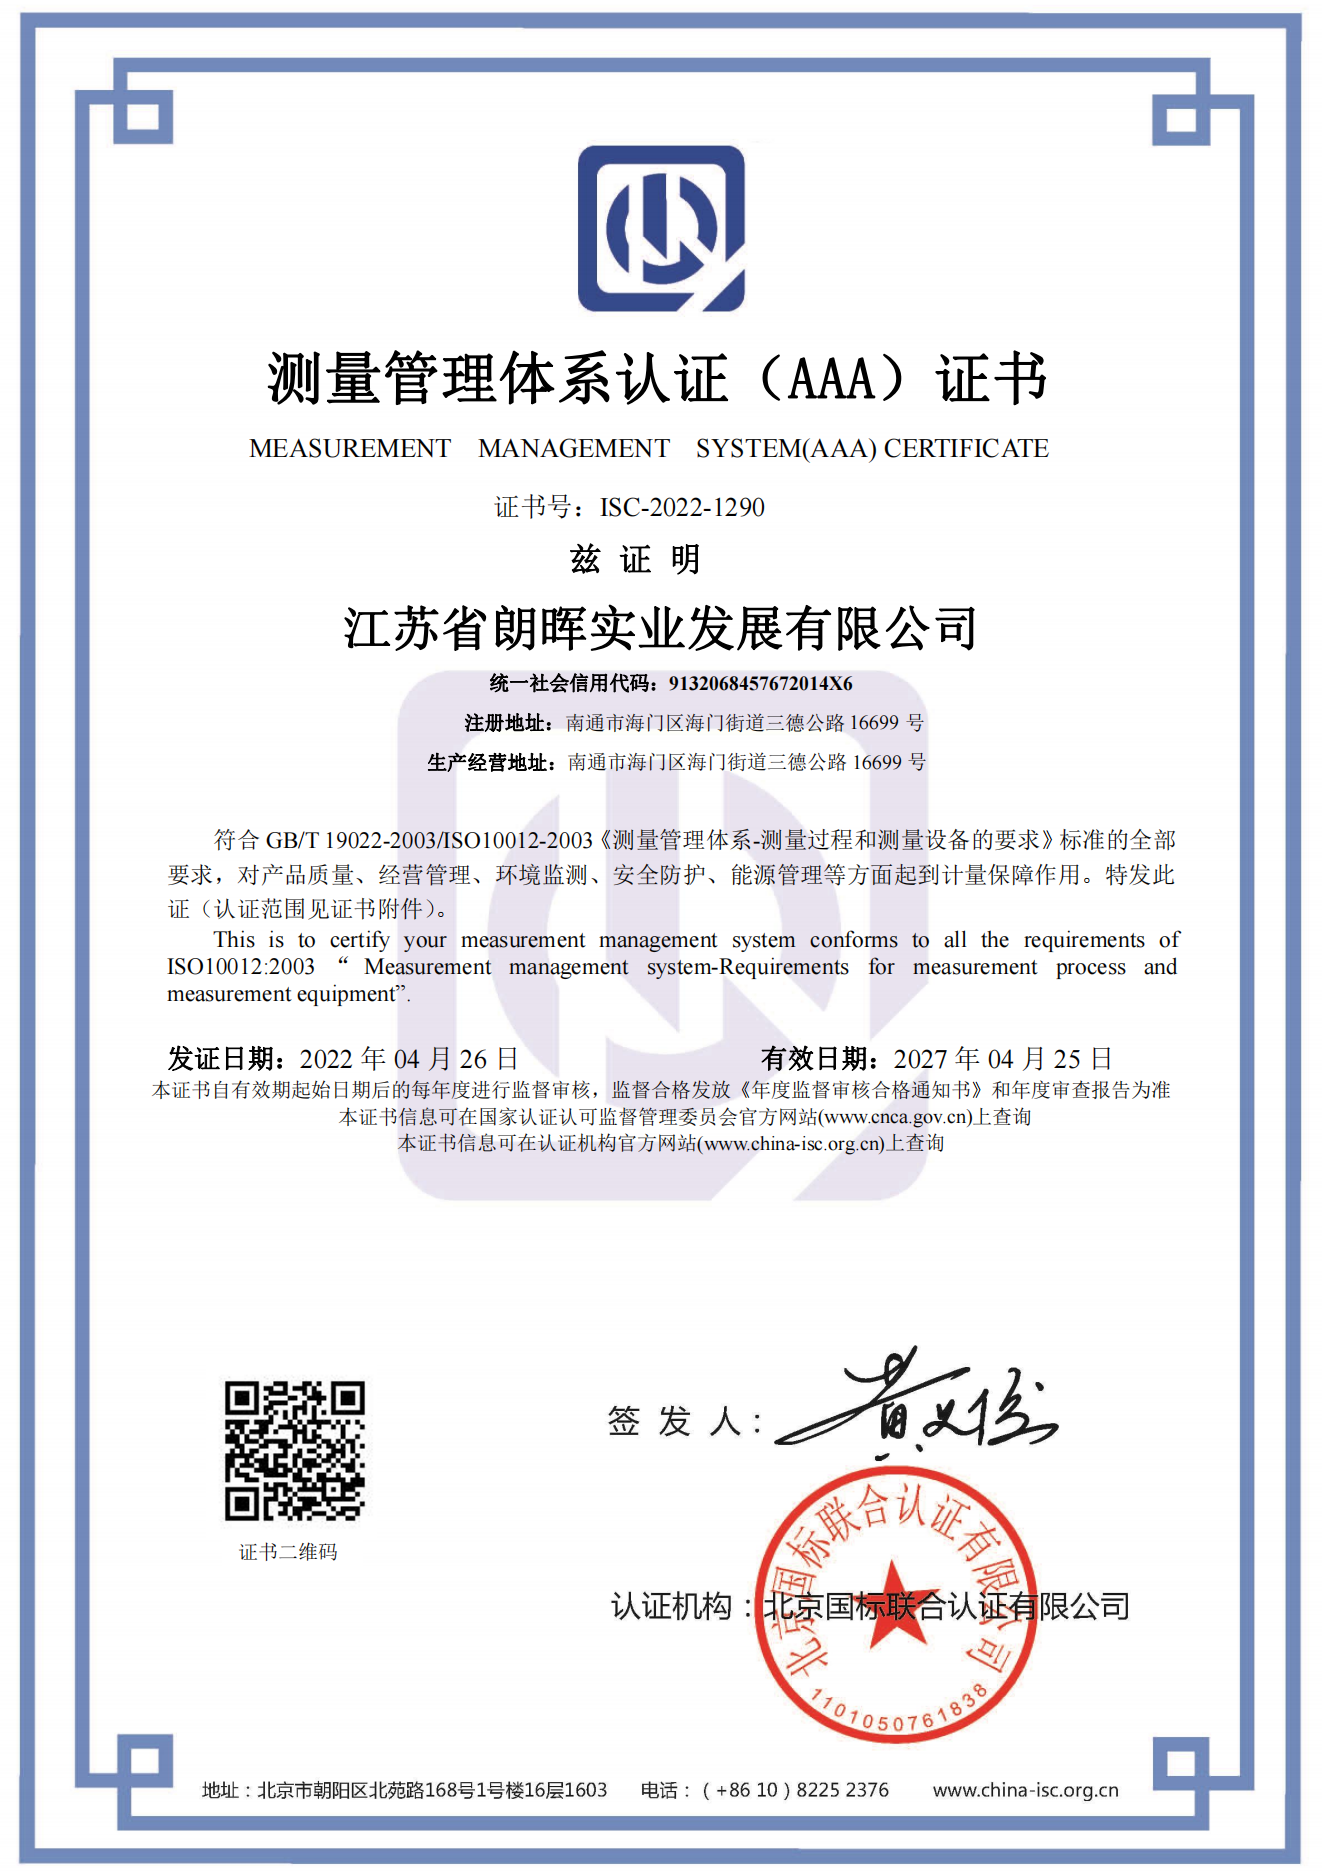 江苏省朗晖实业发展有限公司  喜获“测量管理体系认证（AAA）证书”